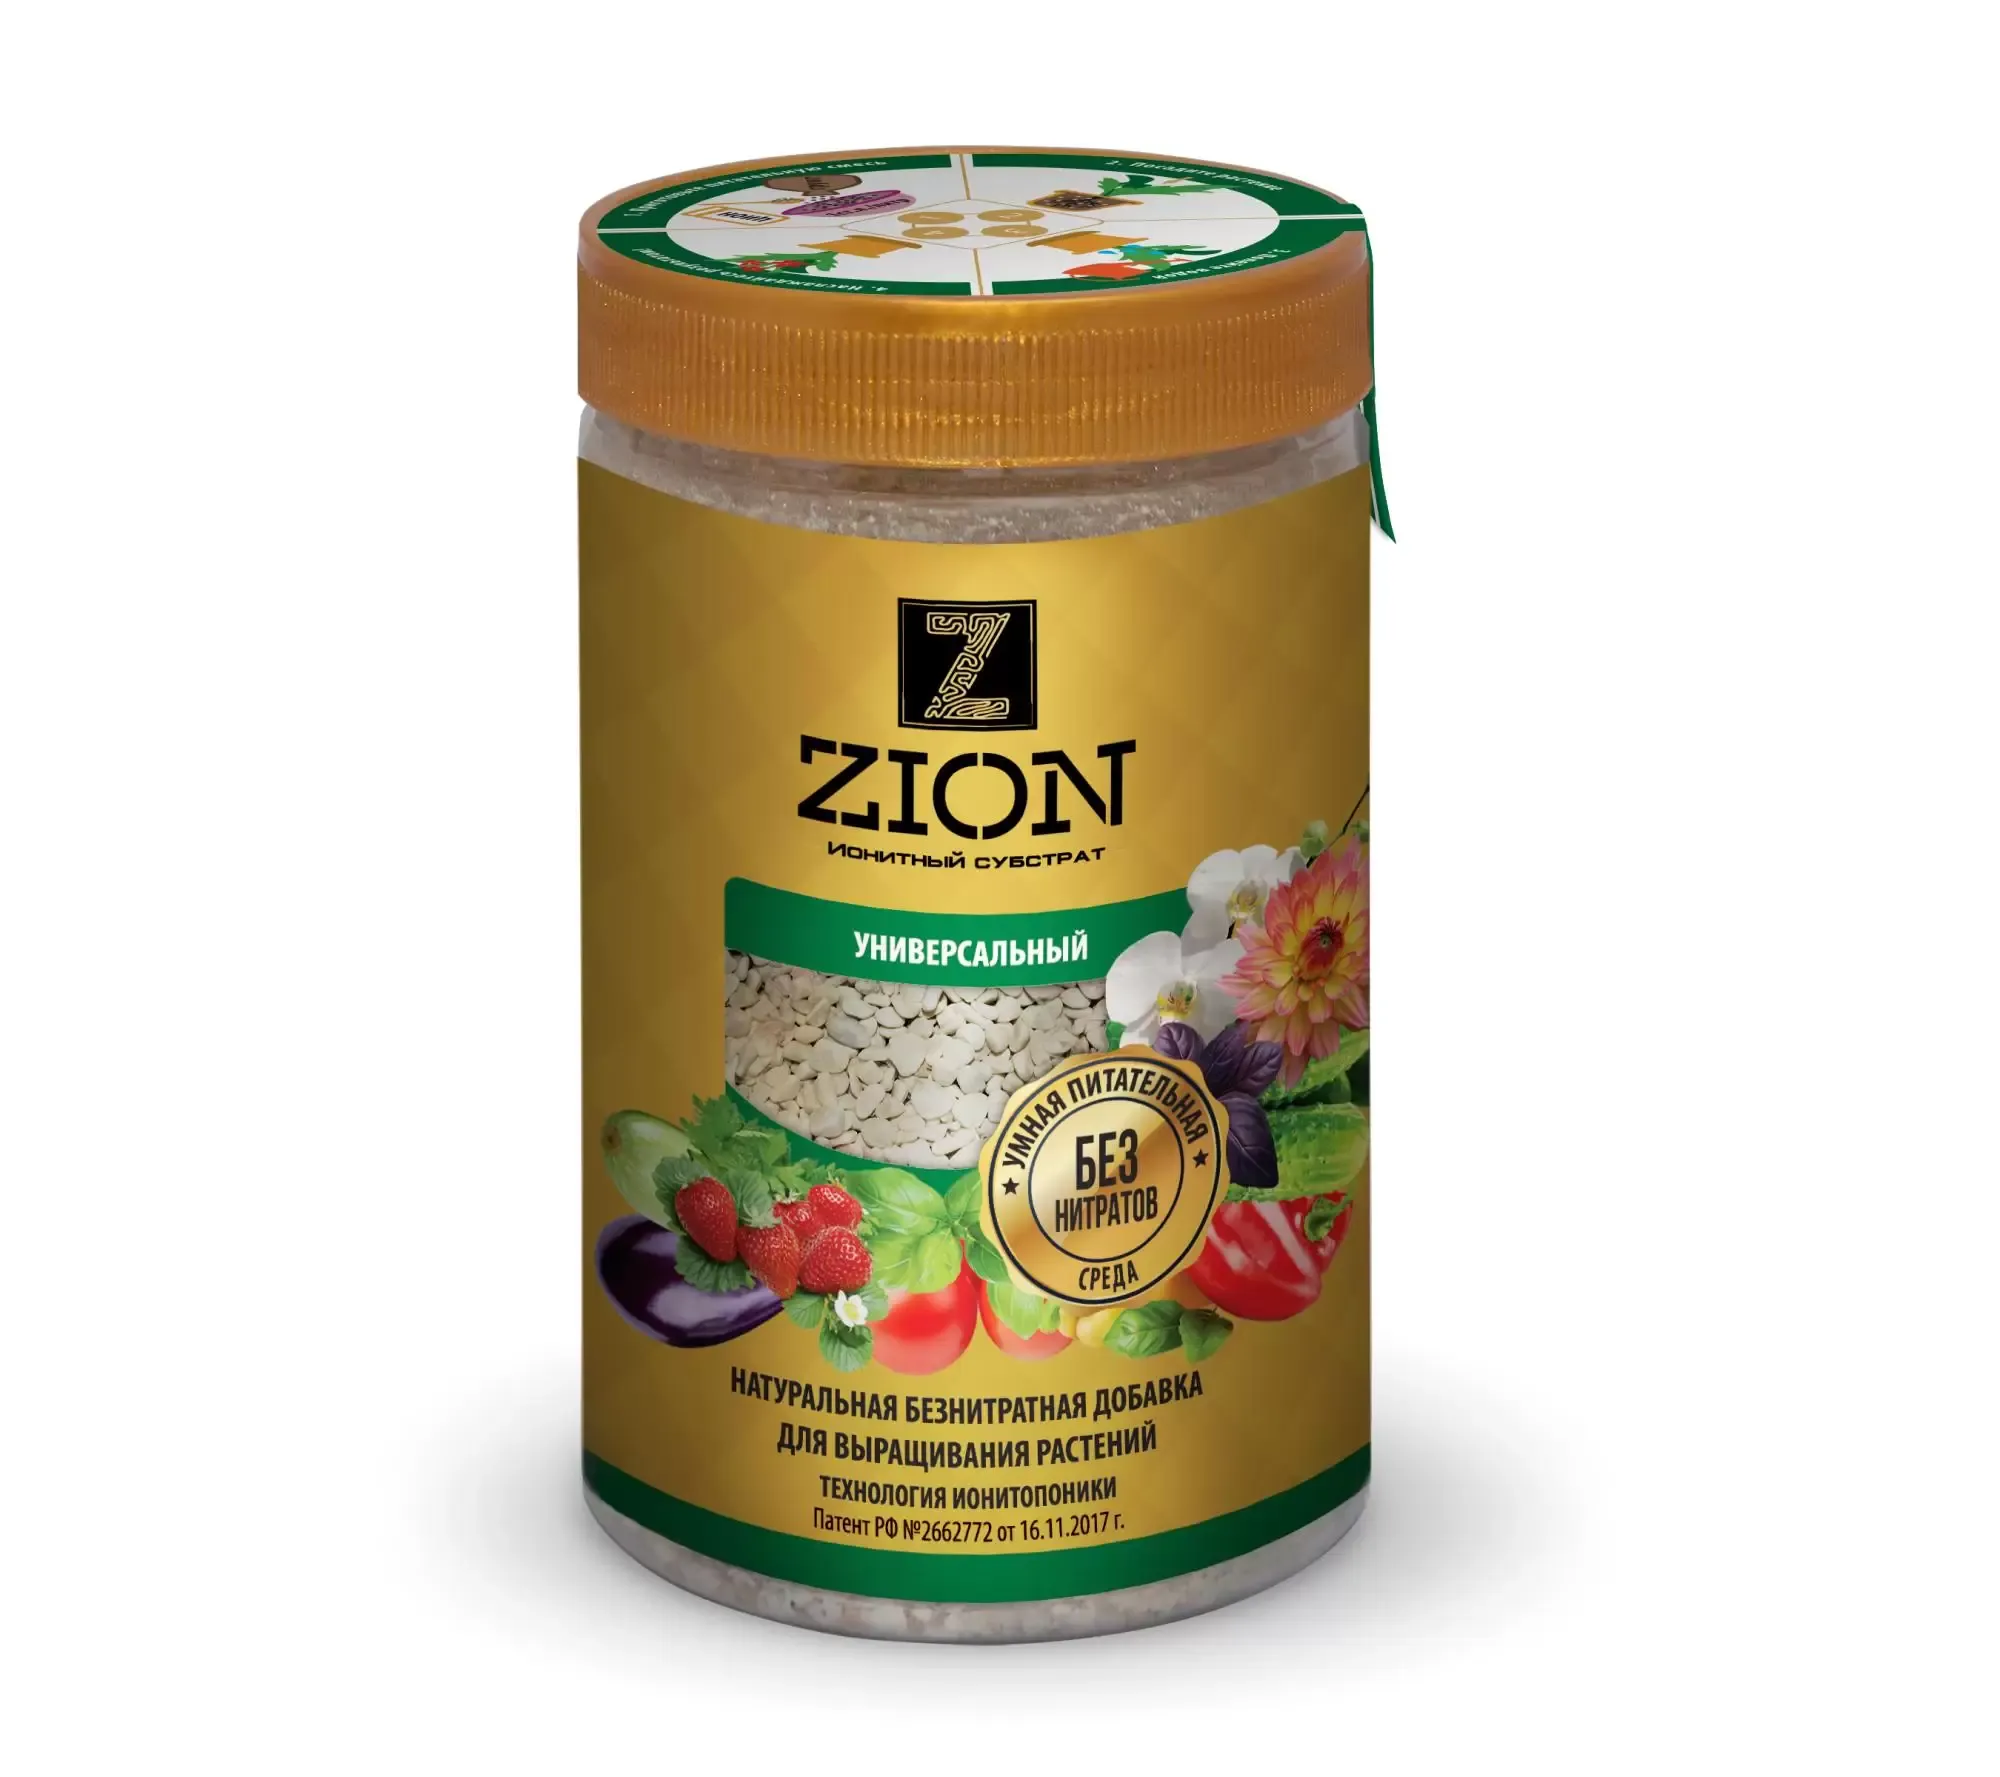 Питательная добавка ZION Классик, 700 гр